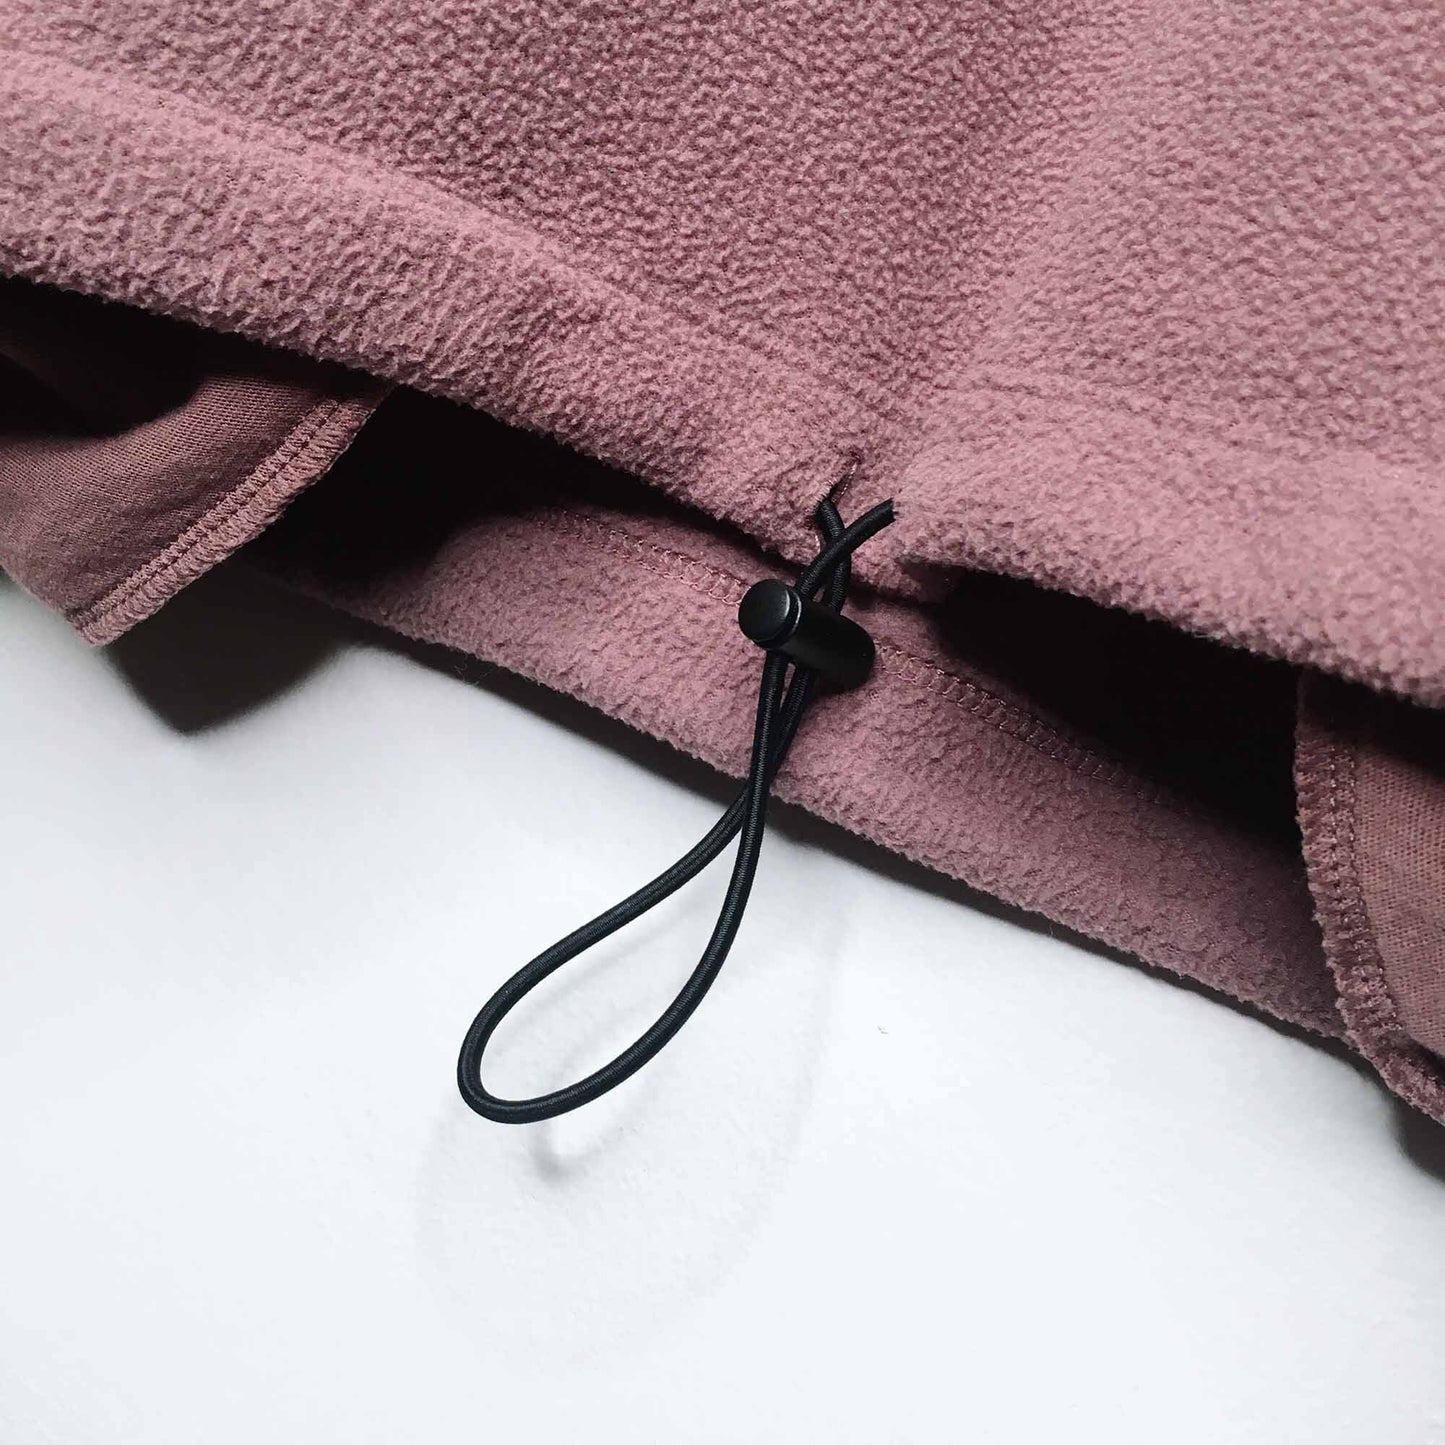 victoria's secret PINK 1/4 zip fleece sweater - size medium